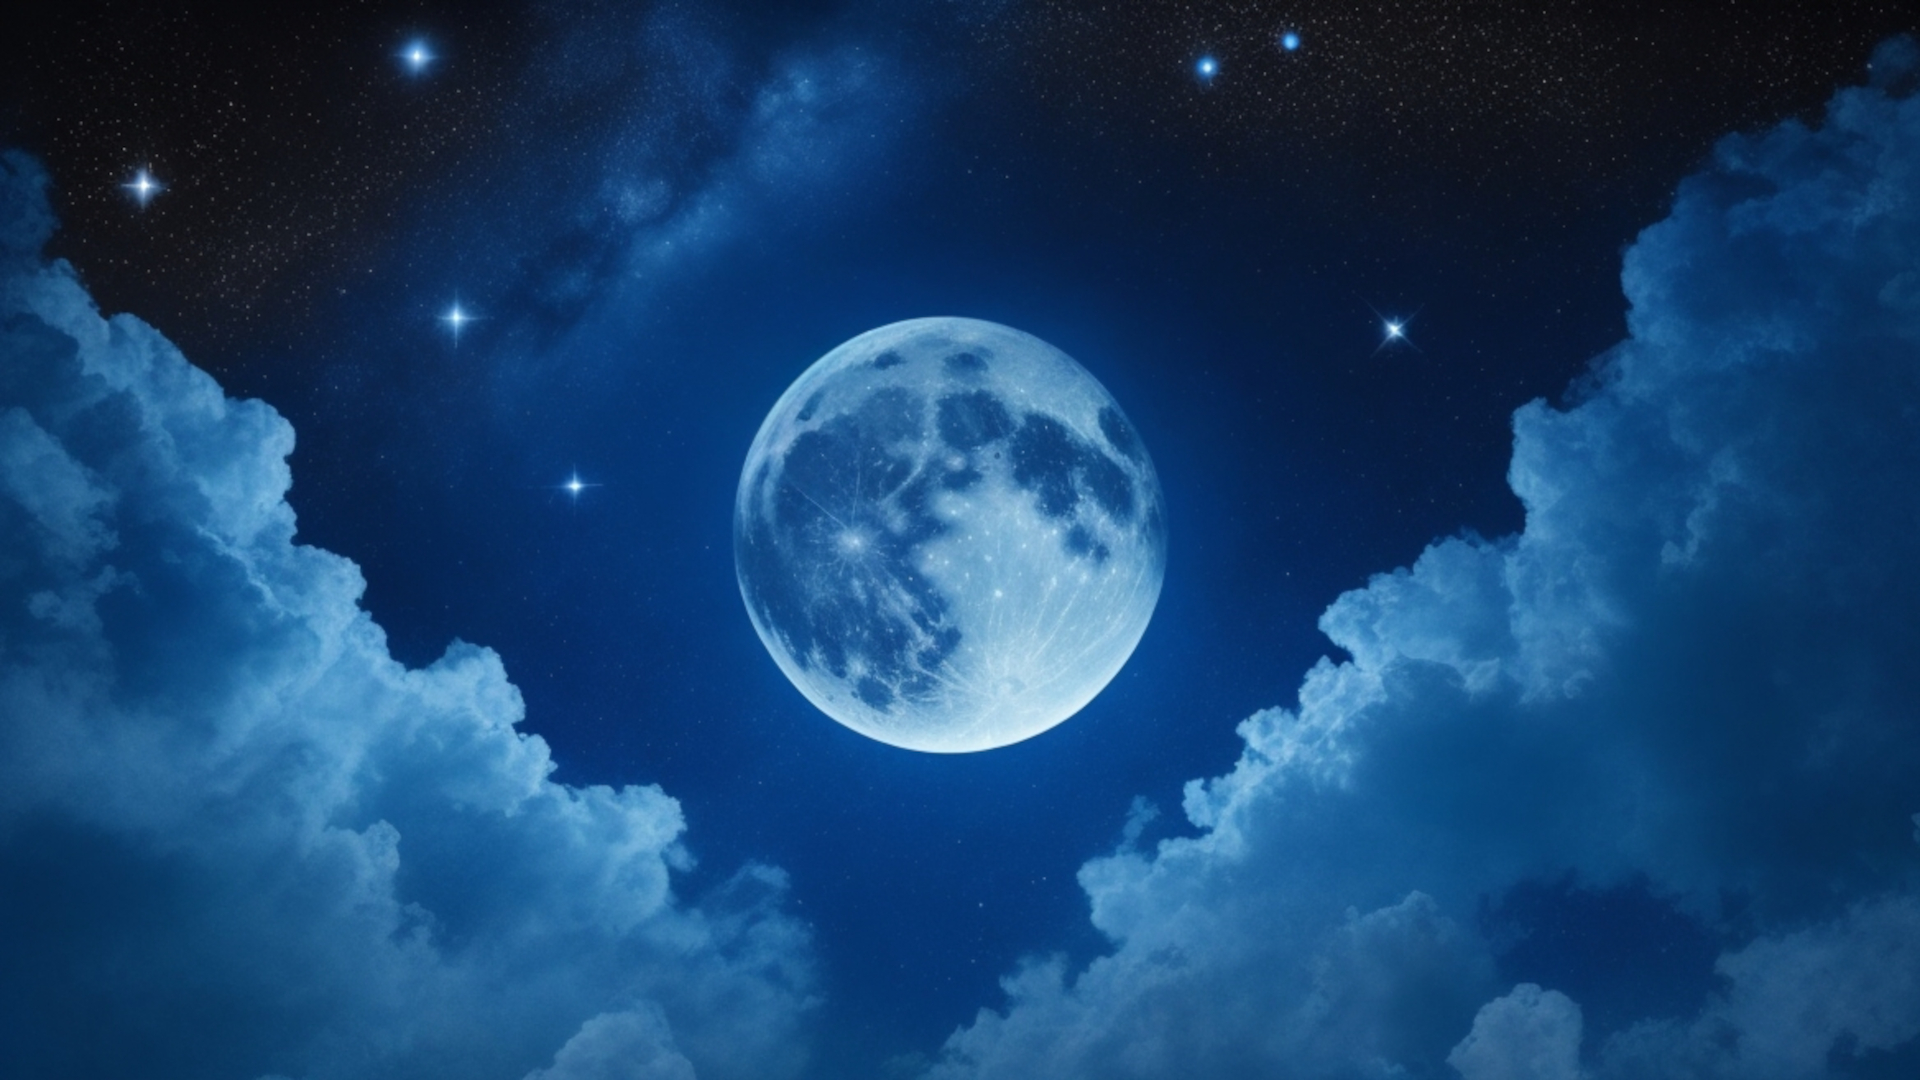 La Magia della Notte: Poesia Celeste nel Cielo Notturno